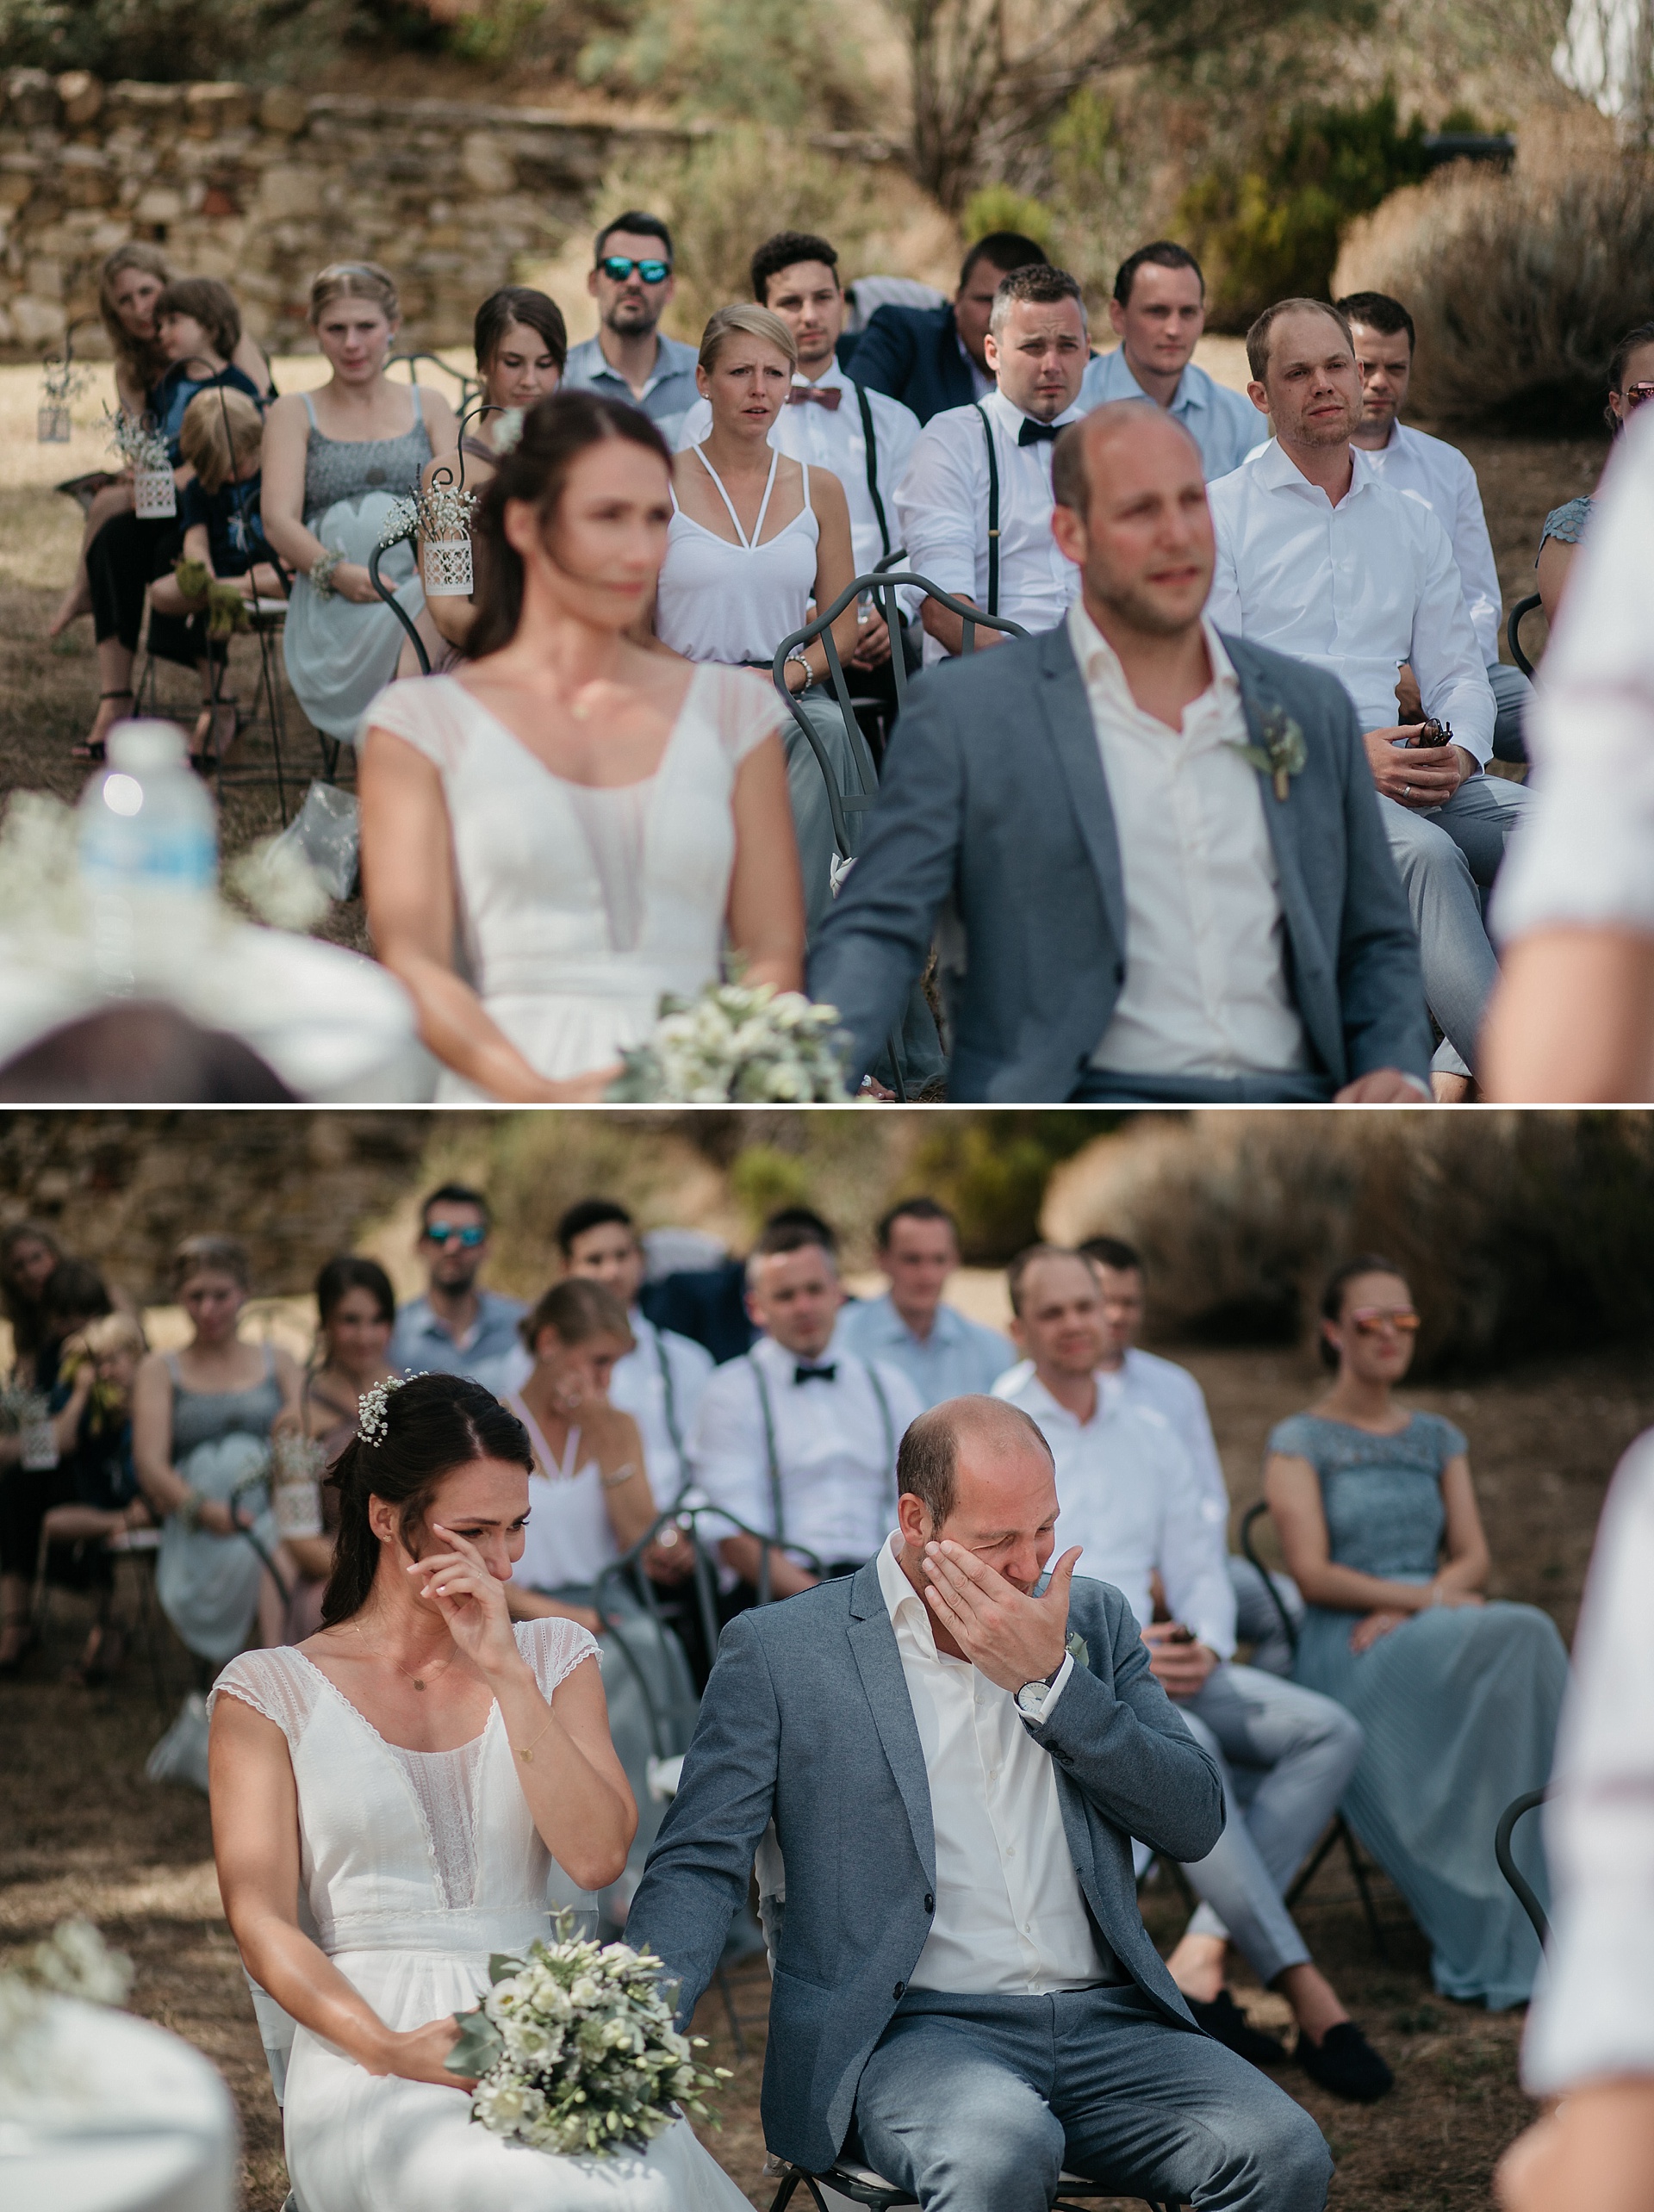 Traumhafte Hochzeit in der Provence. Die Trauzeugen halten eine emotionale Rede.